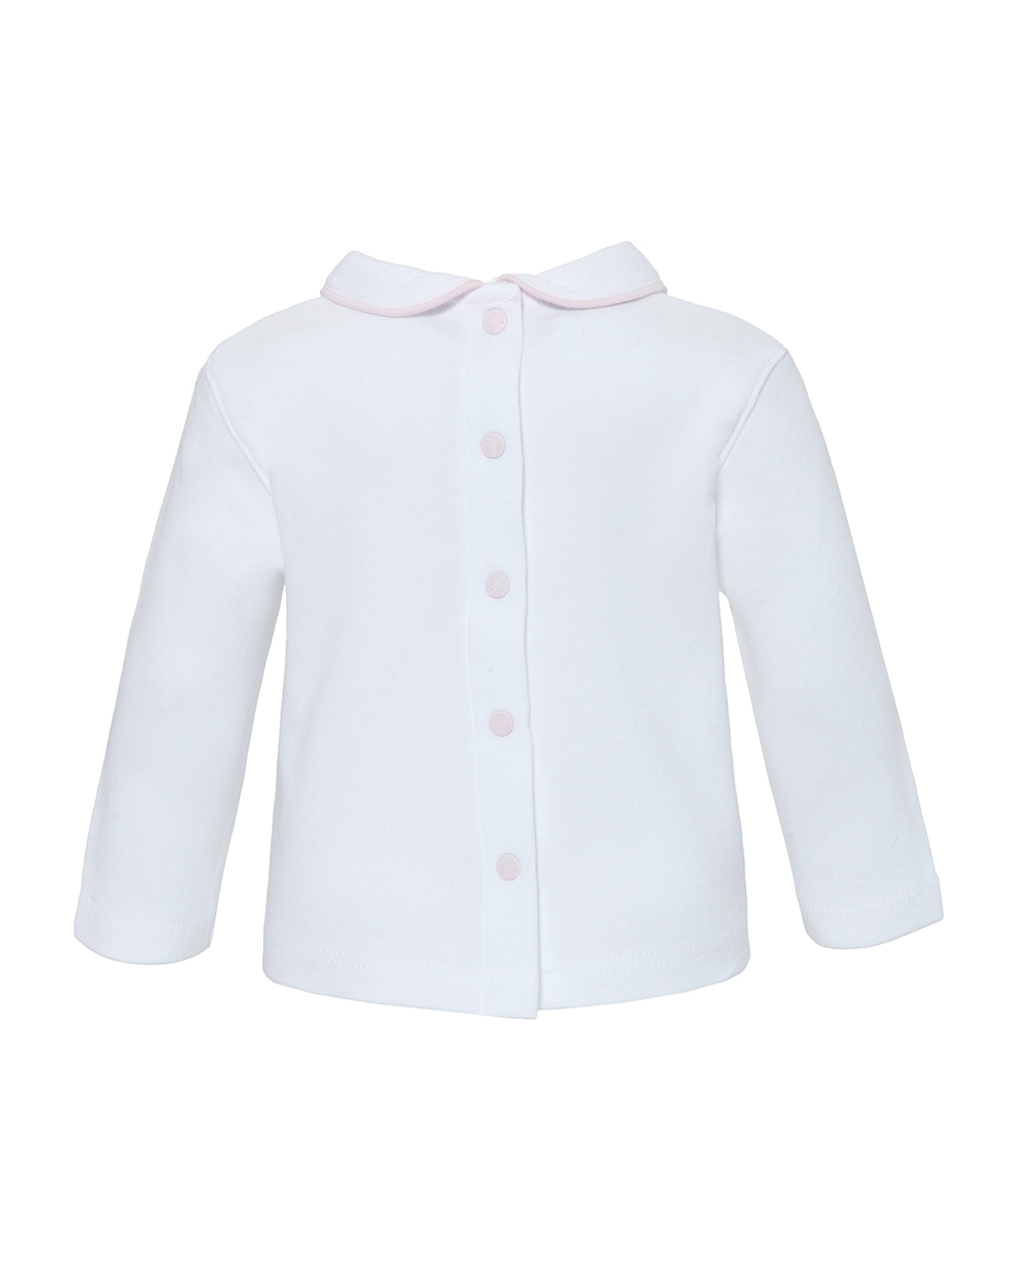 βρεφικά μακρυμάνικα μπλουζάκια πακέτο x2 τμχ λευκό/ροζ για κορίτσι - Prénatal